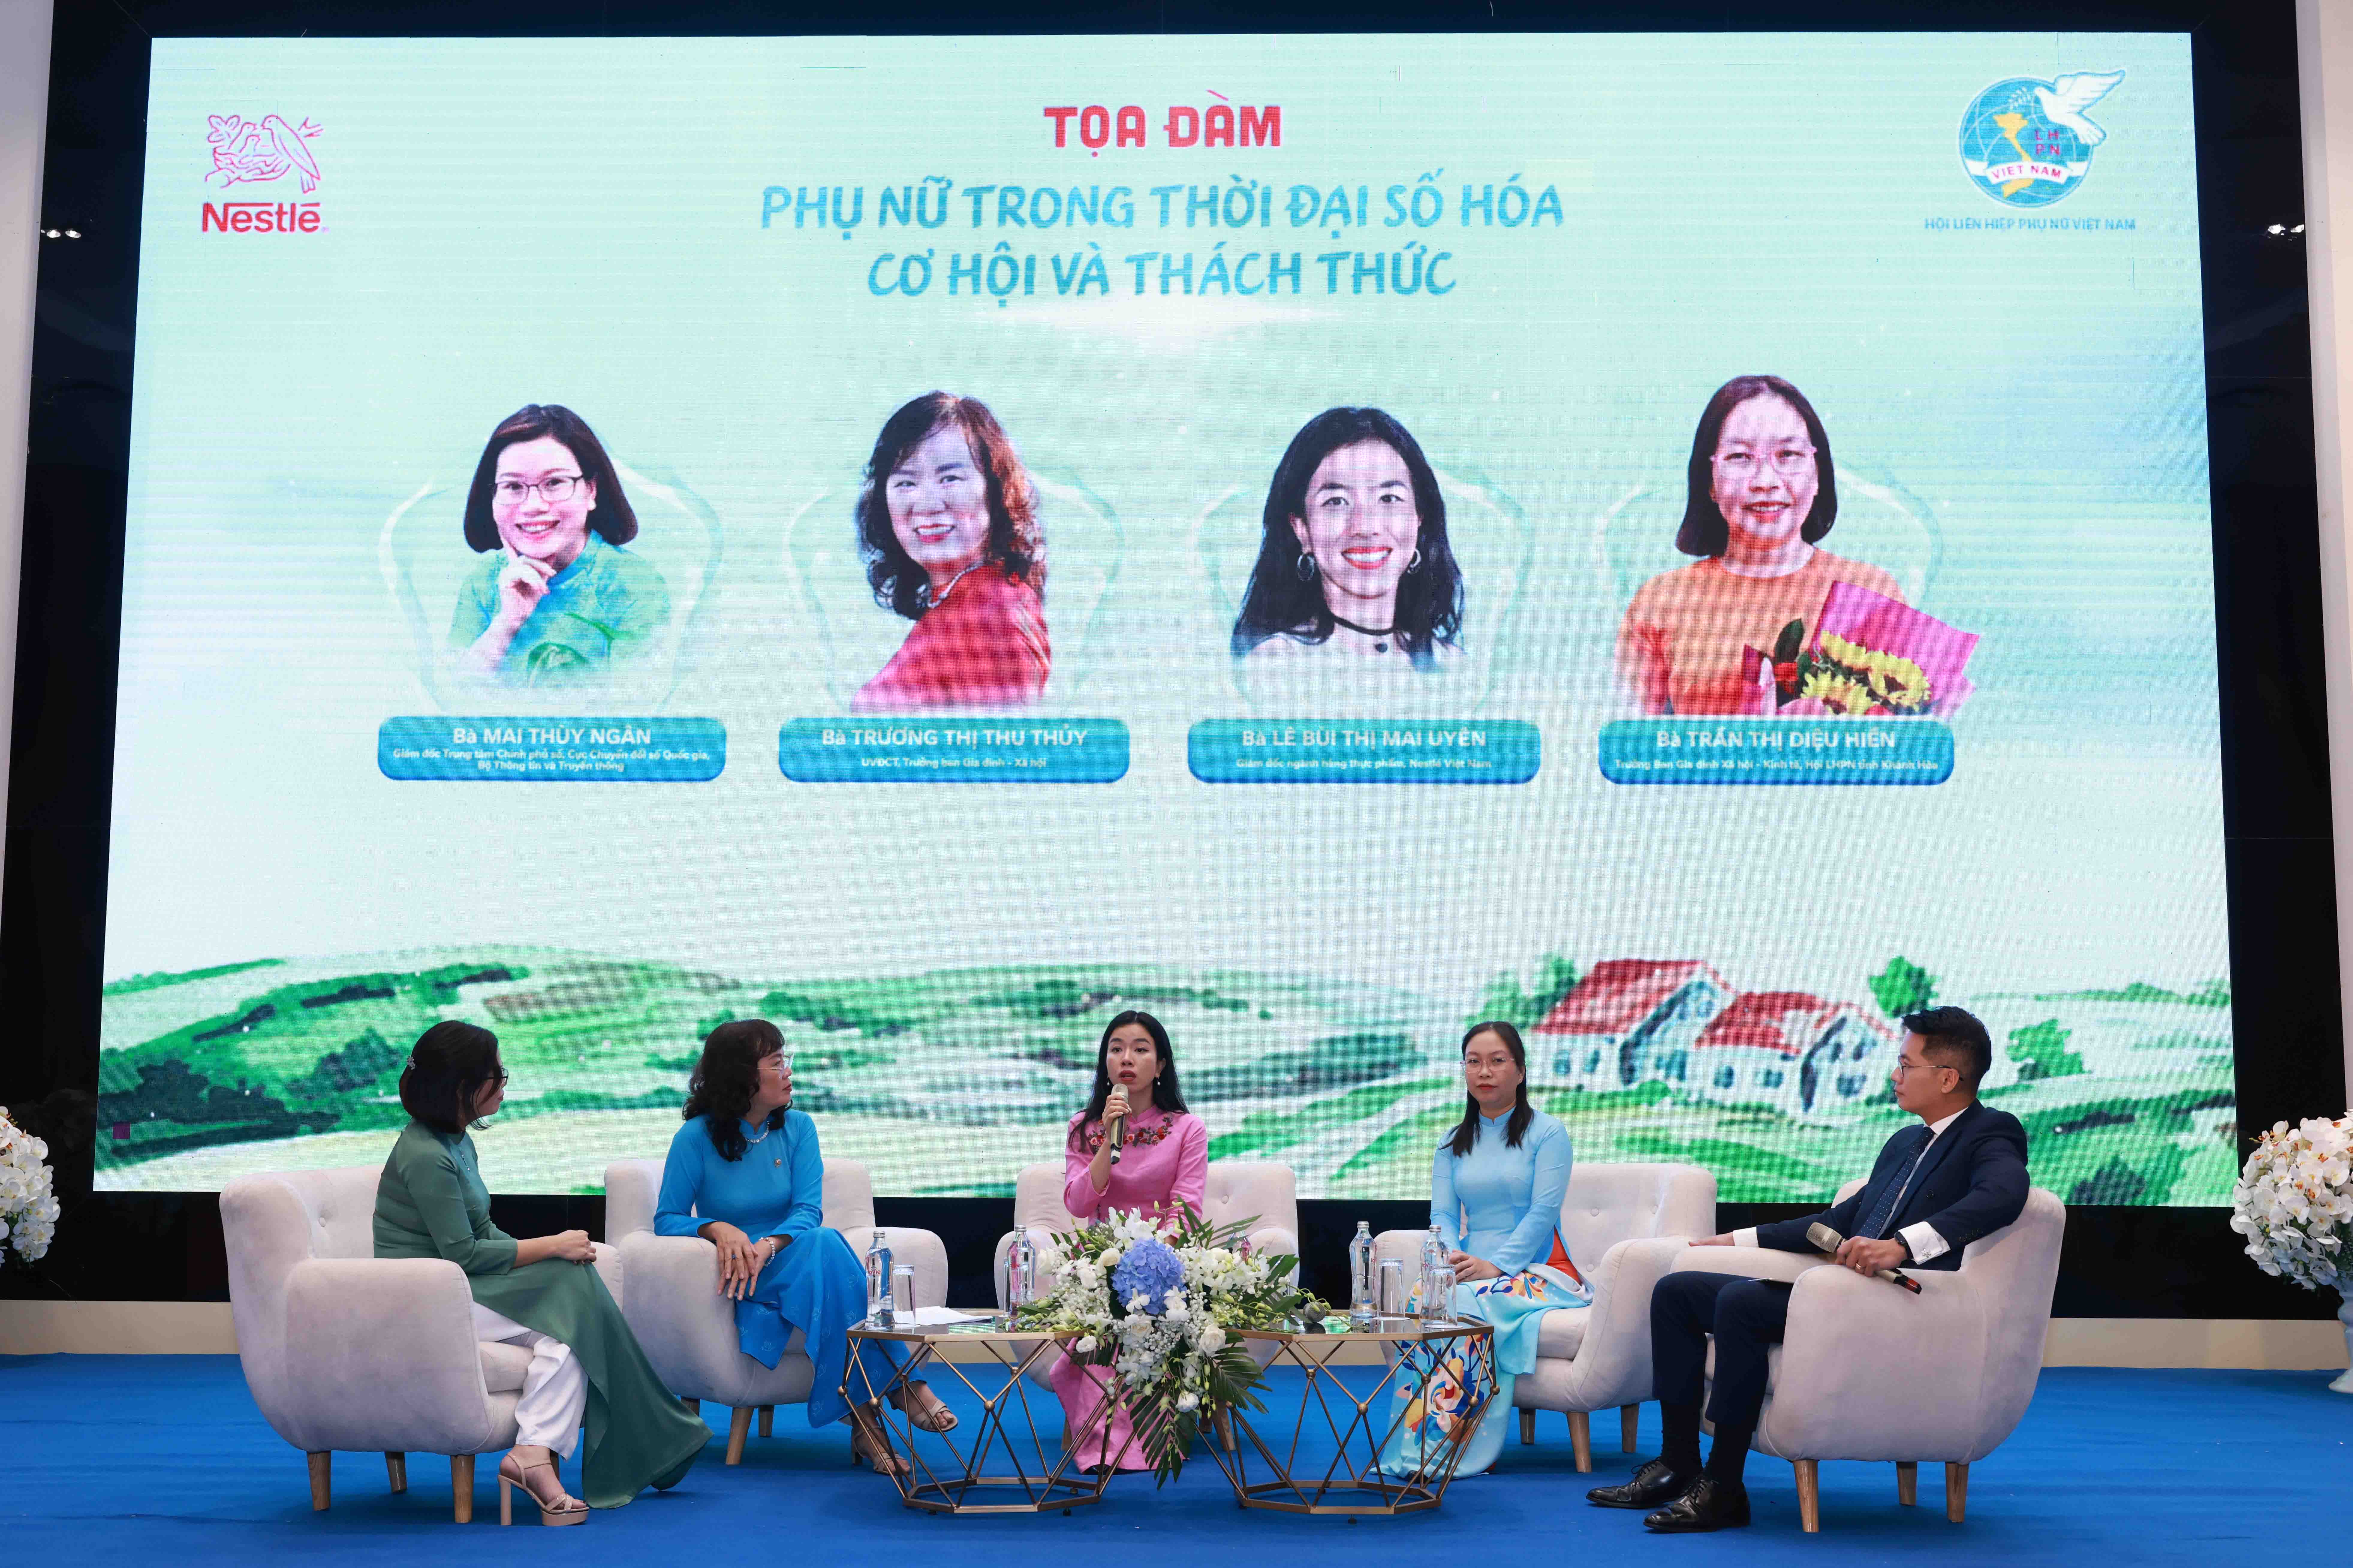 Nestlé chung tay xây dựng hình ảnh người phụ nữ Việt Nam thời đại mới